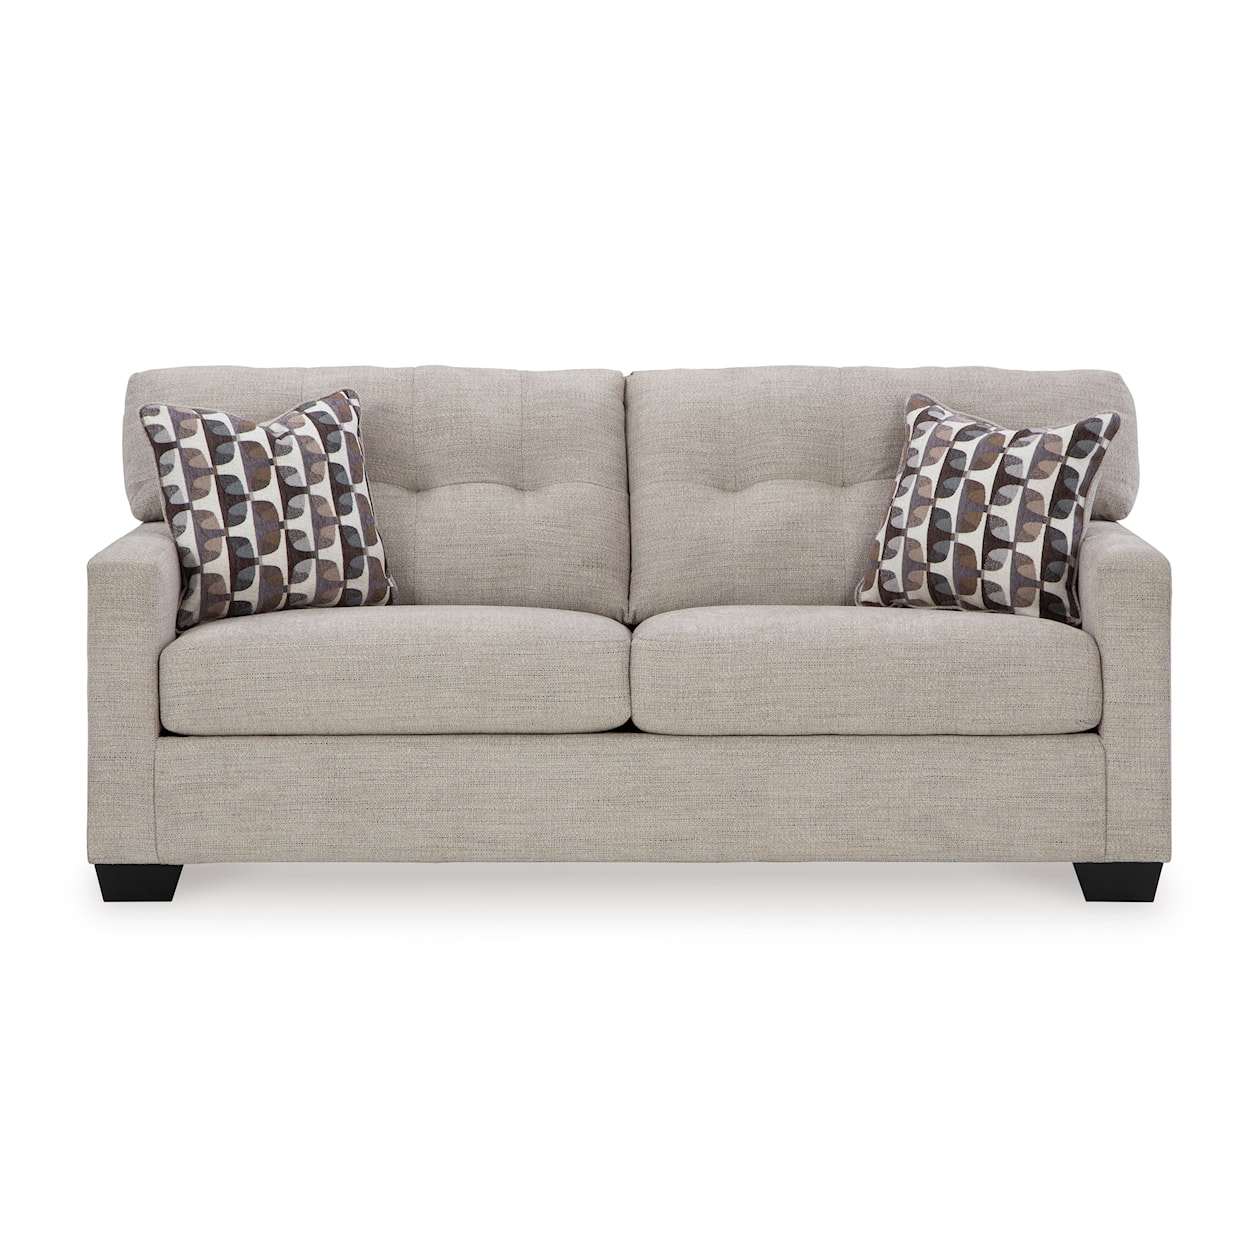 Ashley Furniture Signature Design Mahoney Sofa